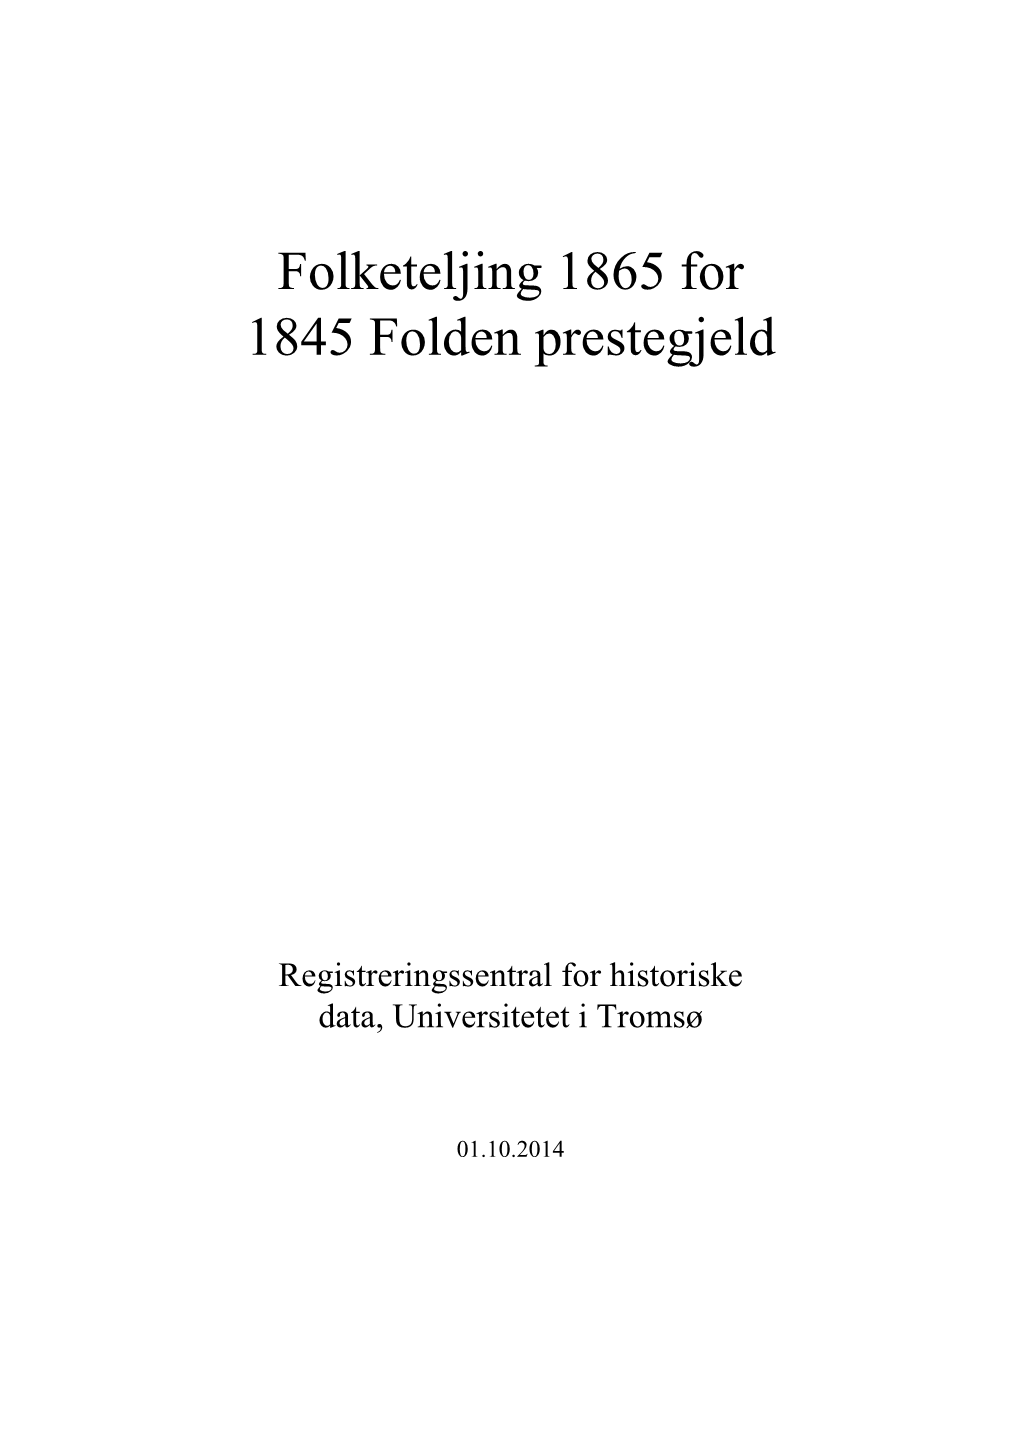 Folketeljing 1865 for 1845 Folden Prestegjeld